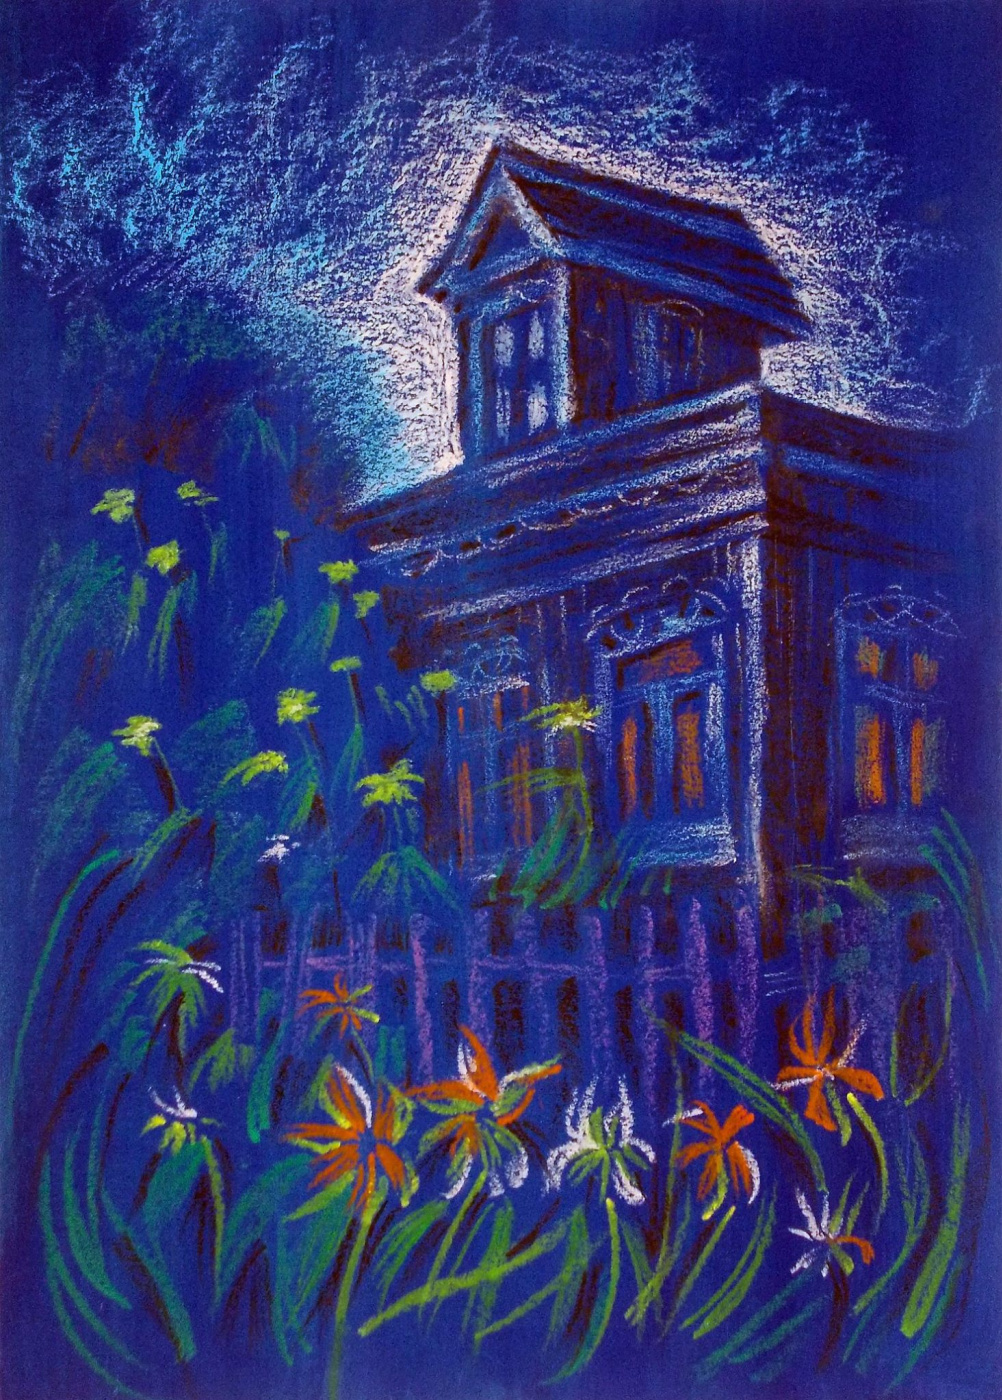 Svetlana Ivanovna Kataeva. "KRUZHOVE HOUSES OF RUSSIA", tonal paper, pastel